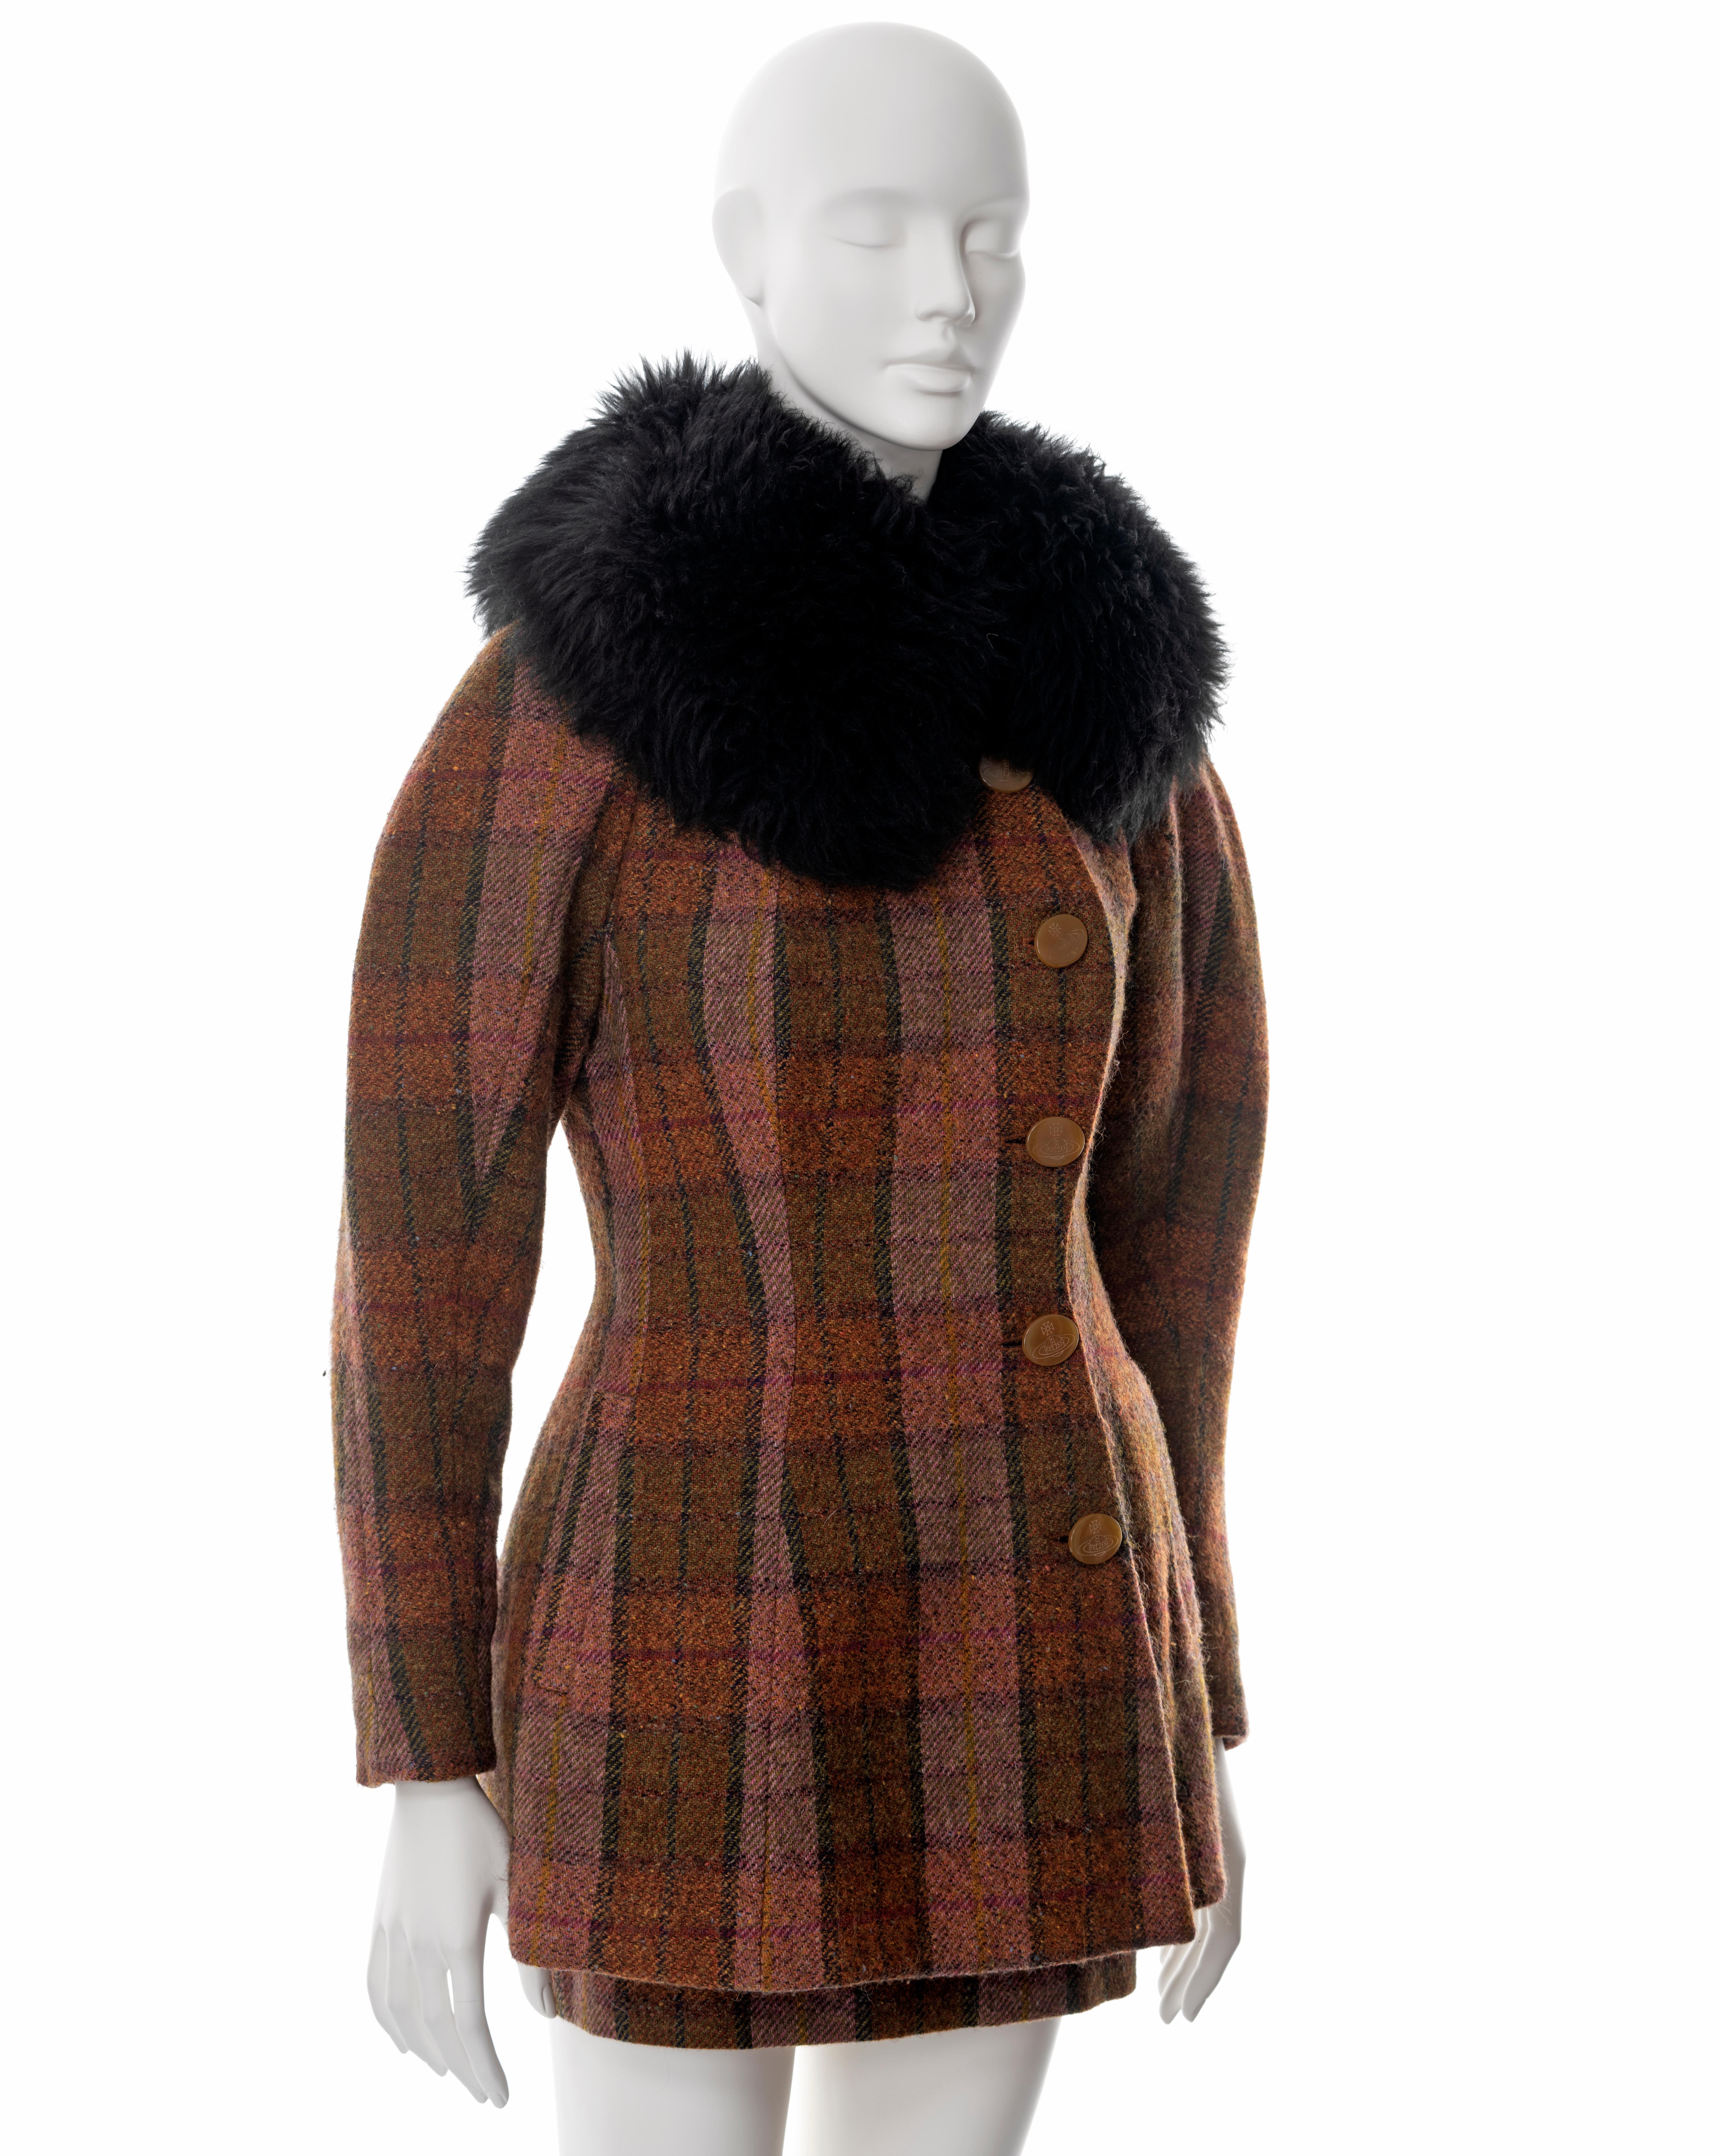 Vivienne Westwood brown tartan tweed skirt suit with sheepskin collar, fw 1995 1